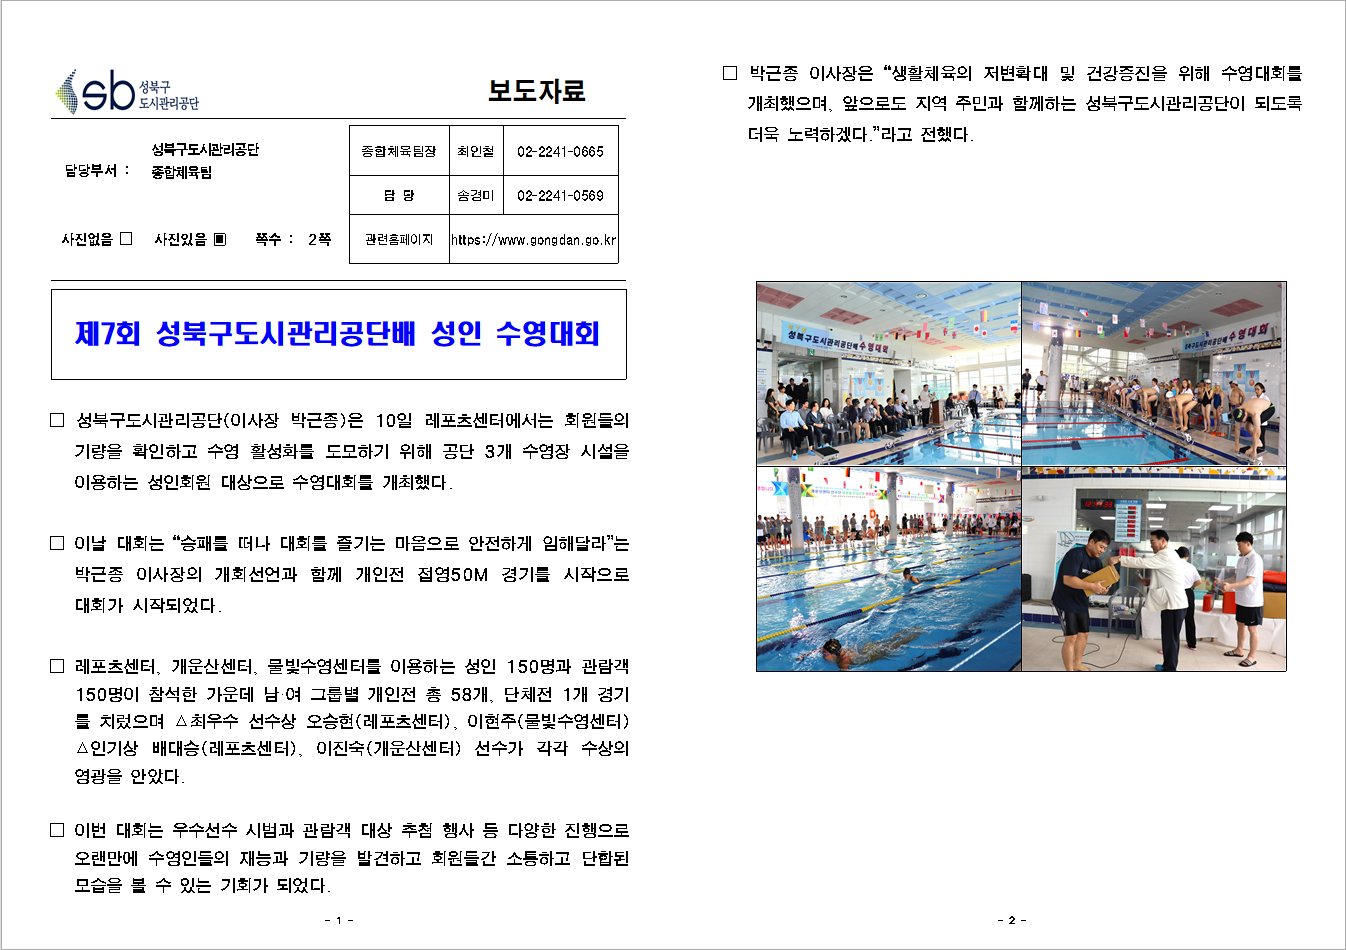 성북구도시관리공단, 제7회 성인 수영대회 보도자료